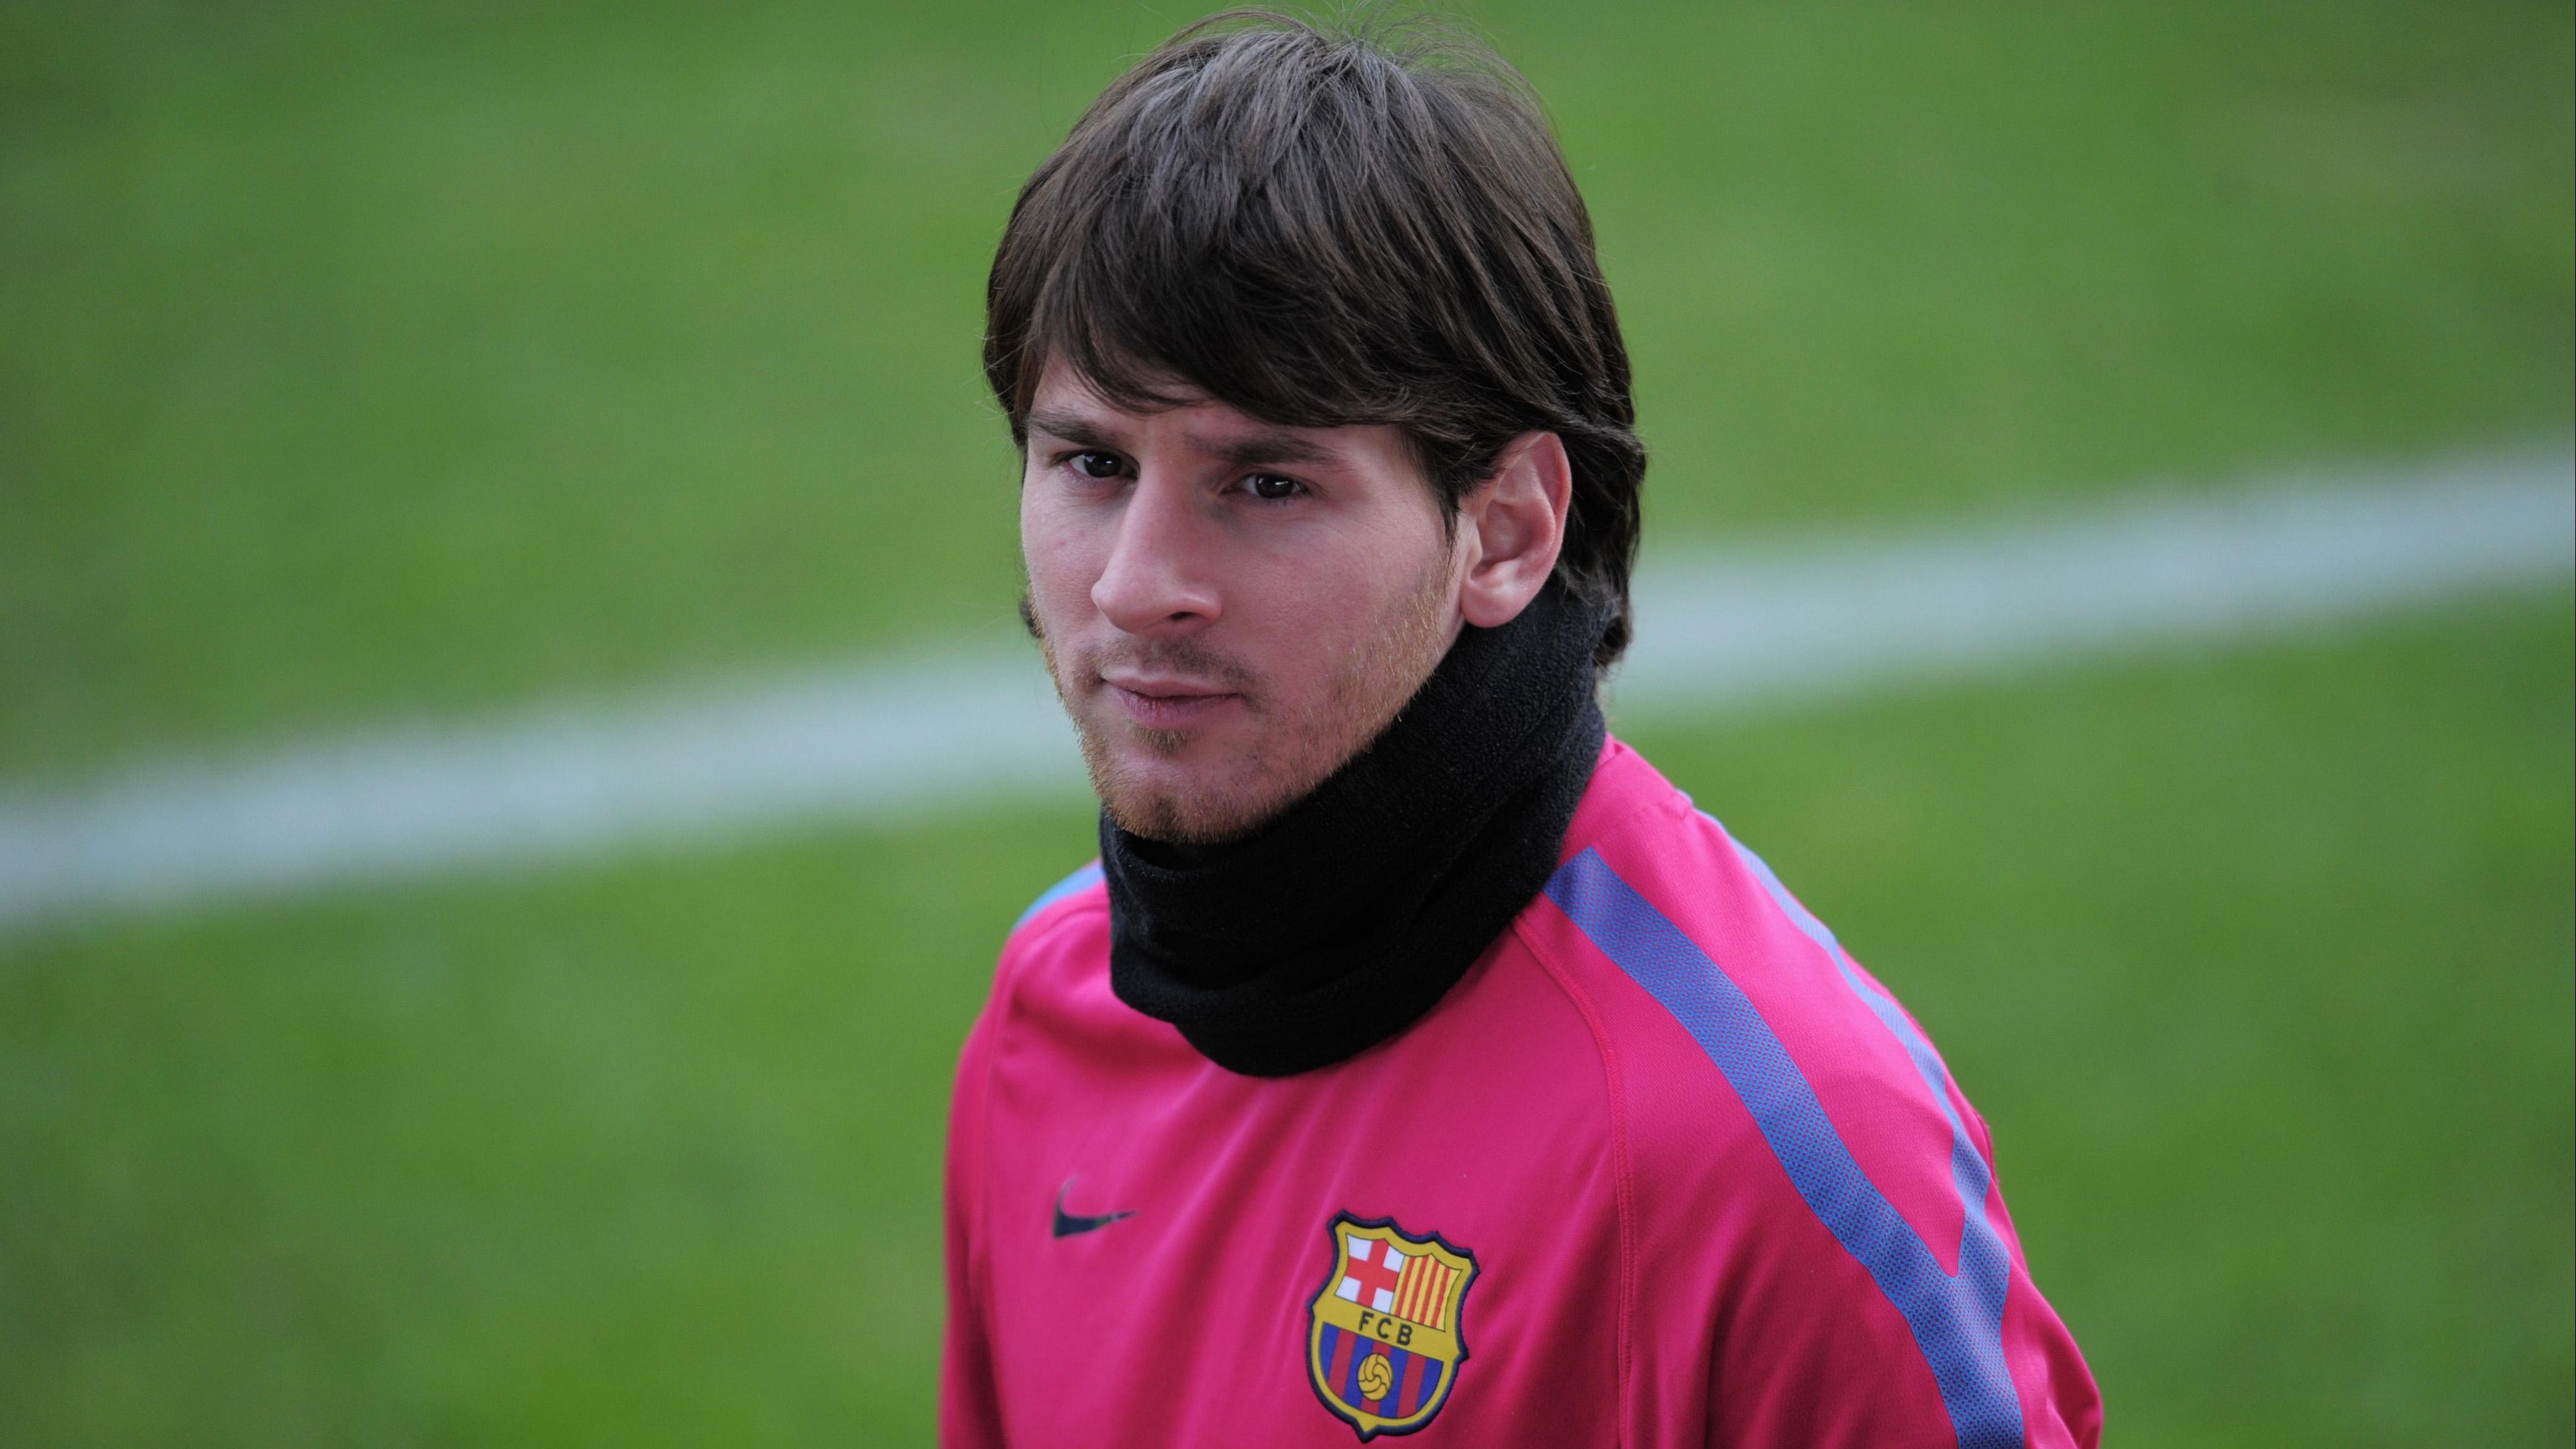 Hãy cùng tìm hiểu bộ sưu tập hình nền Lionel Messi trẻ độc đáo của chúng tôi - một tổng hợp những hình ảnh đẹp và ấn tượng nhất về cậu bé thiên tài của làng bóng đá. Với những hình nền ấn tượng này, bạn sẽ thấy được tài năng thiên bẩm của Lionel Messi ngay trên màn hình máy tính của mình.